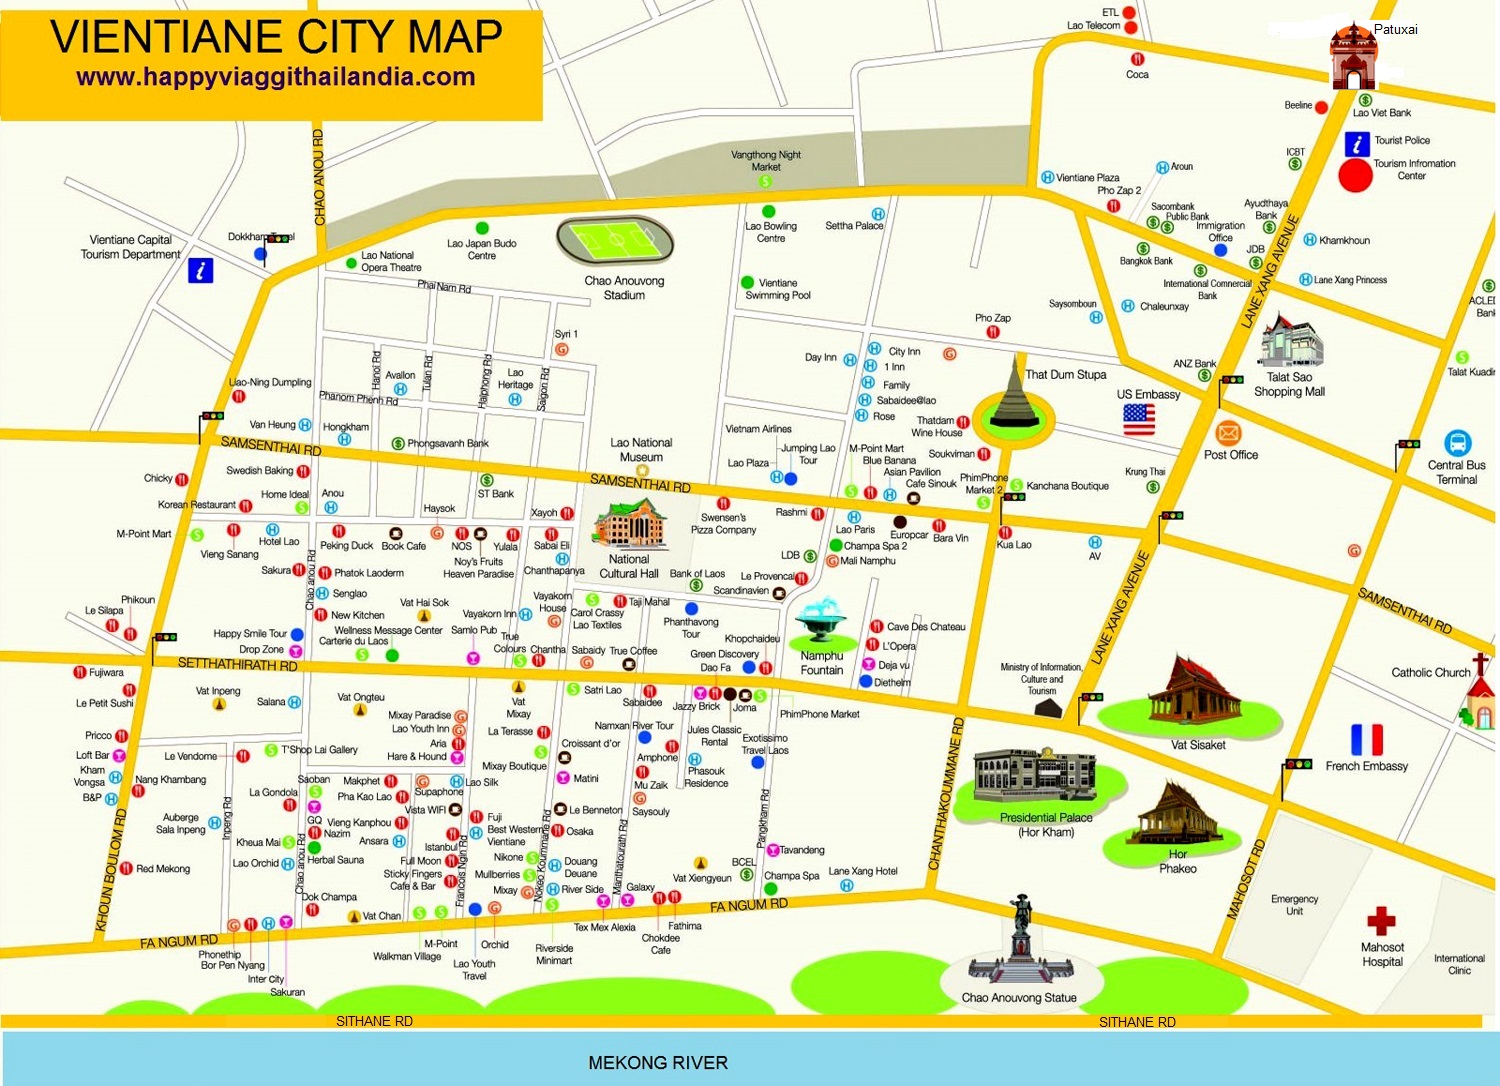 Vientiane: cartina turistica mappa geografica con le attrazioni da visitare nella capitale del Laos